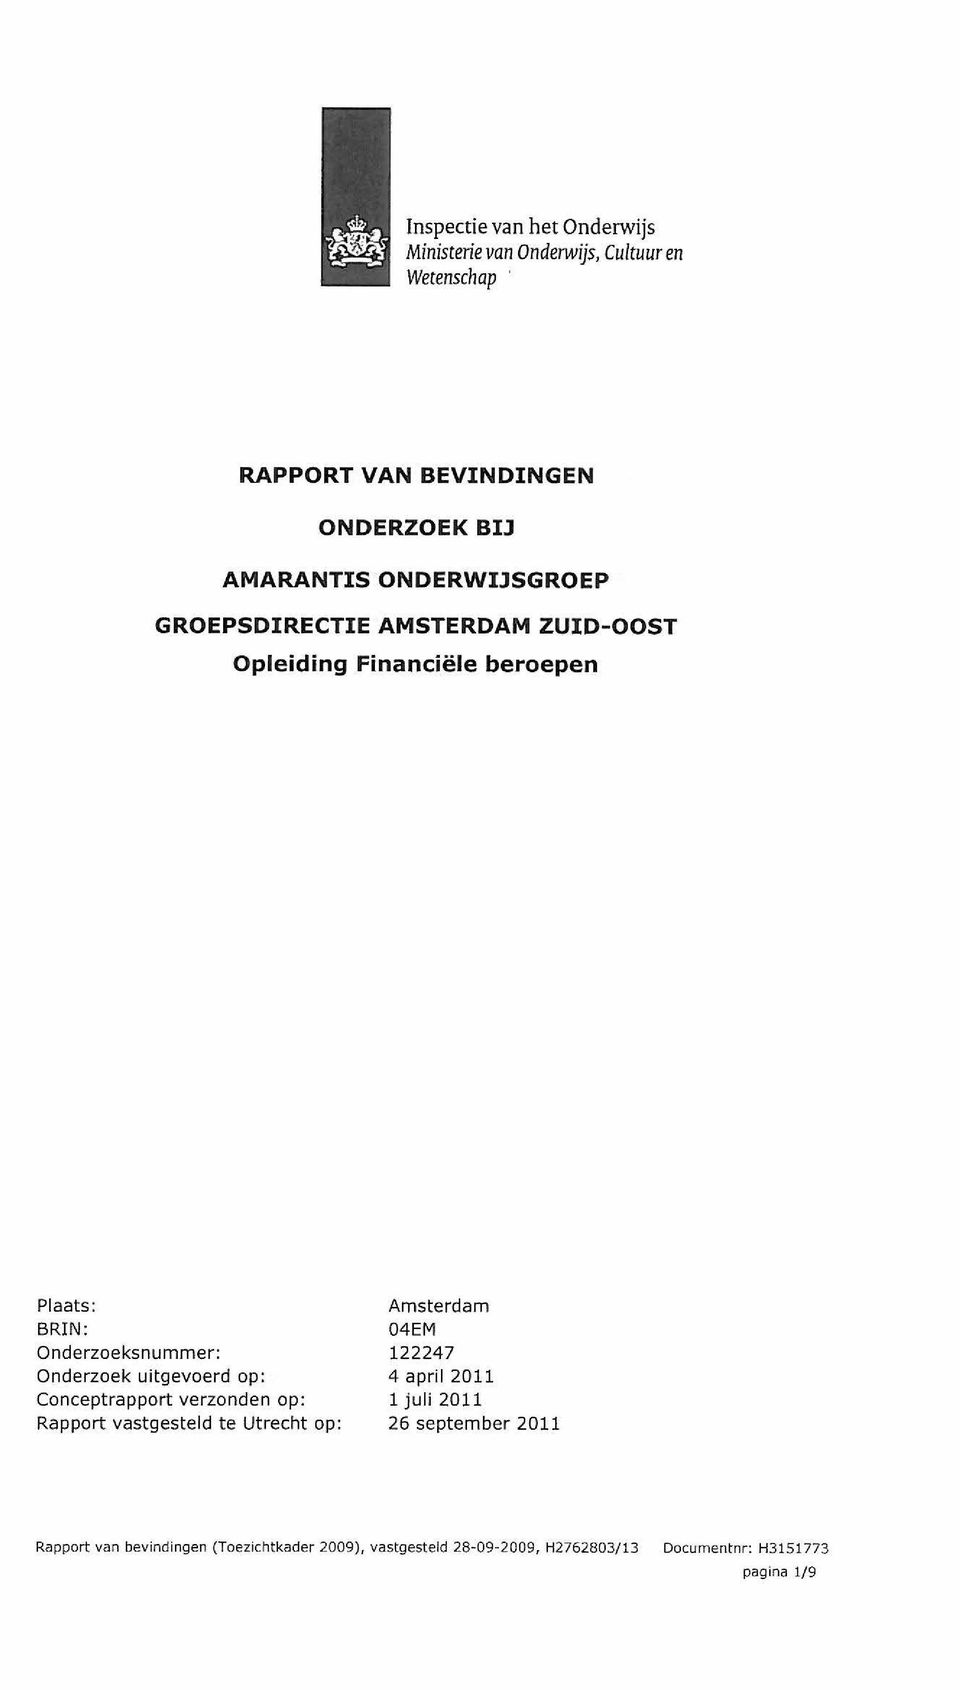 uitgevoerd op : Conceptrapport verzonden op: Rapport vastgesteld te Utrecht op : Amsterdam 04EM 122247 4 april 2011 1 juli